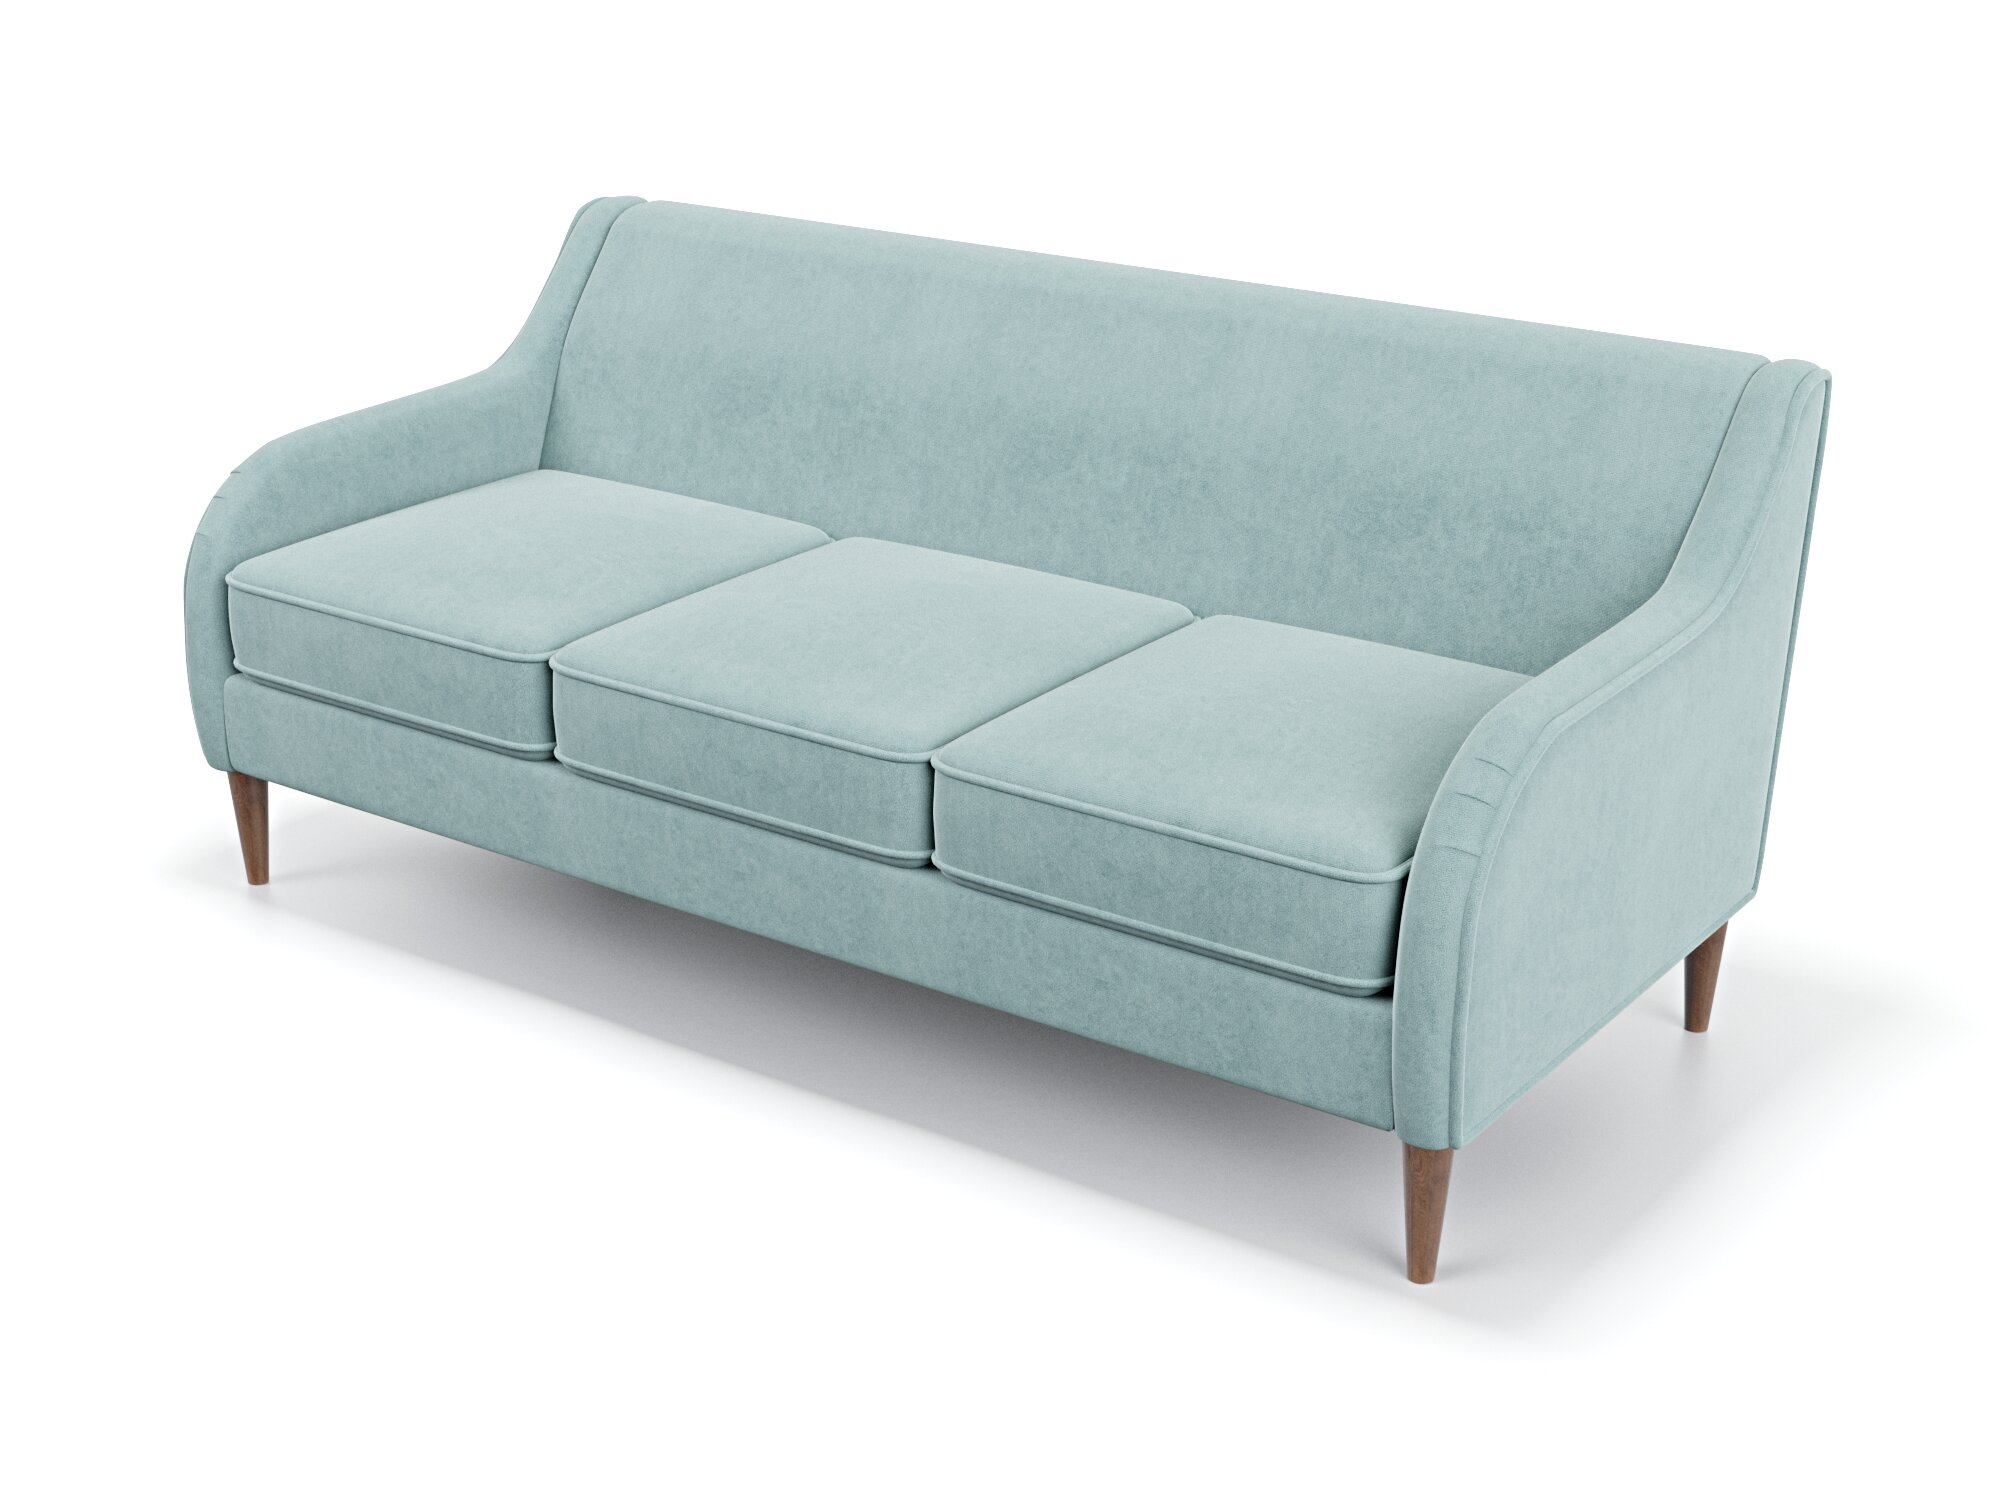 Дизайнерский прямой диван Soft Element Вектор, трехместный, деревянные ножки, велюр, мятный, стиль, в гостиную, офис